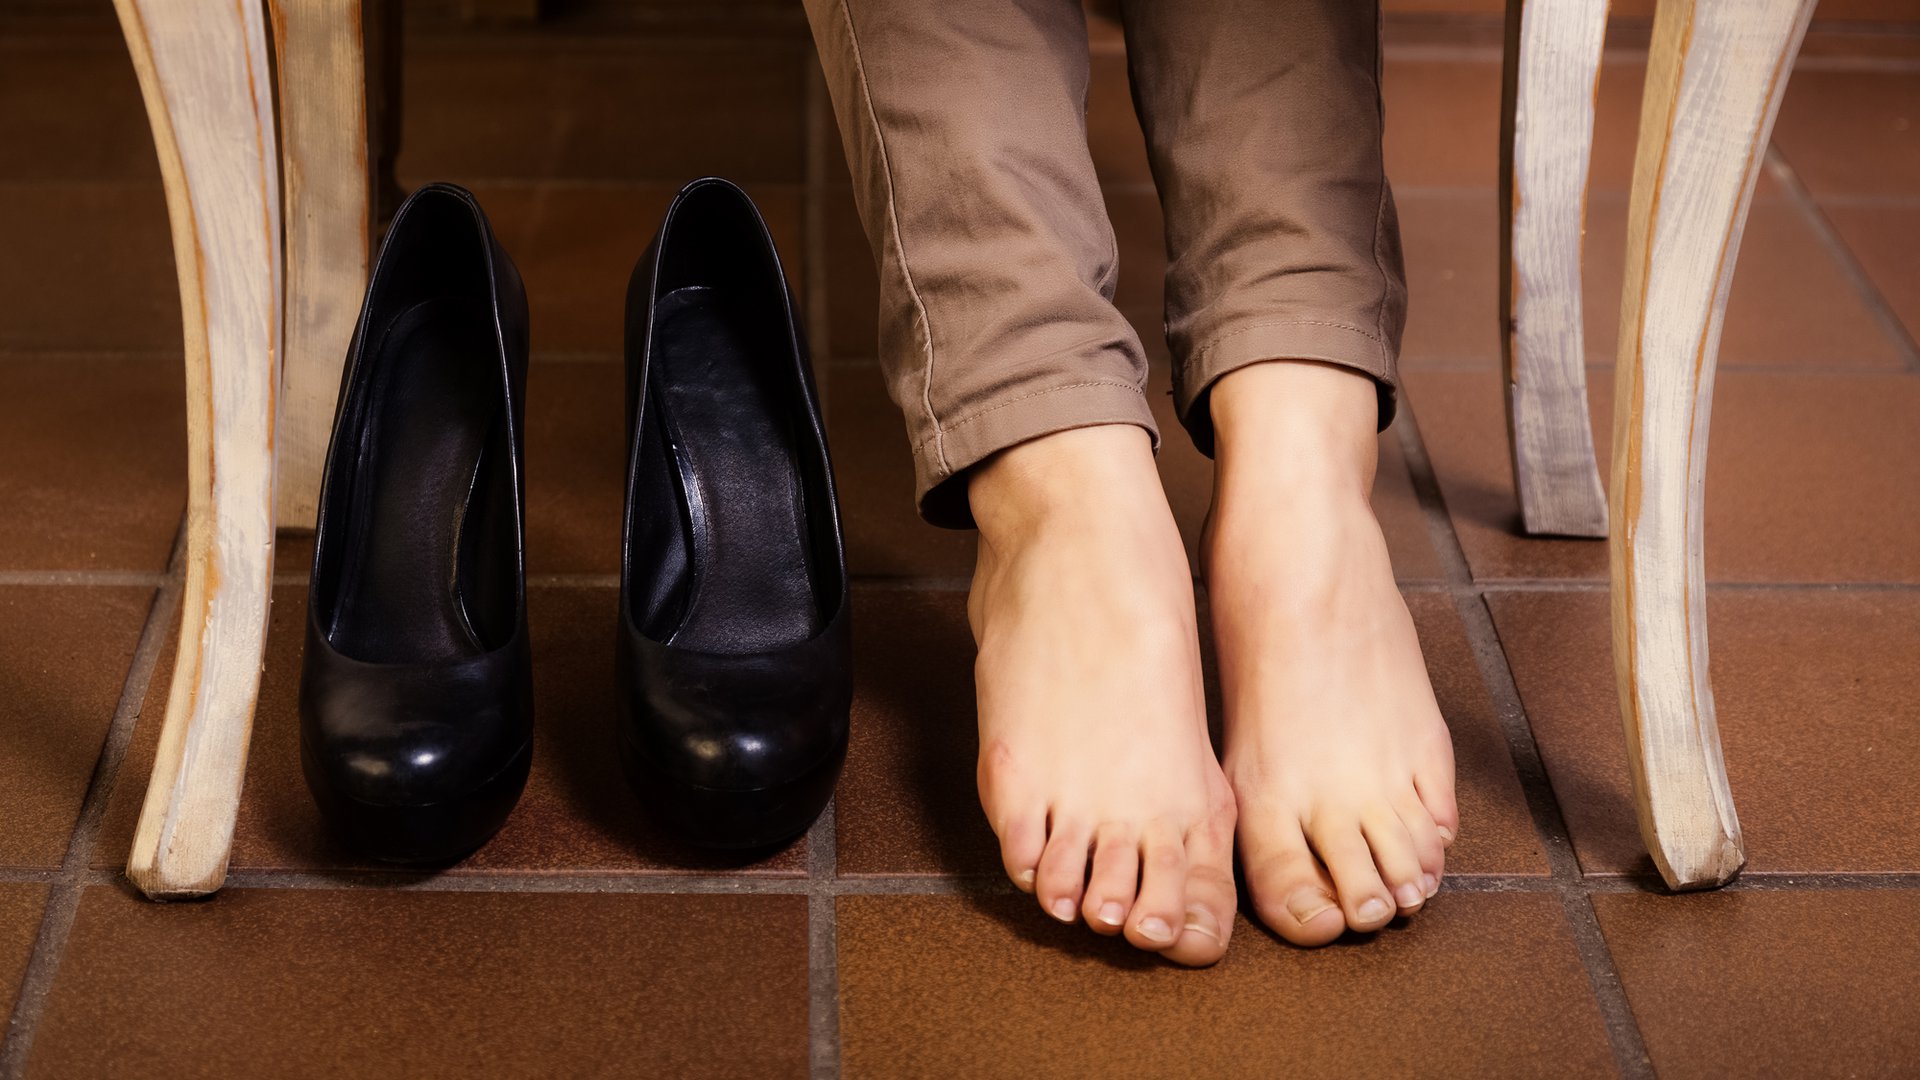 Foot under table. Туфли на босую ногу женские. Ноги в туфлях. Неудобные туфли. Ступни в туфлях.